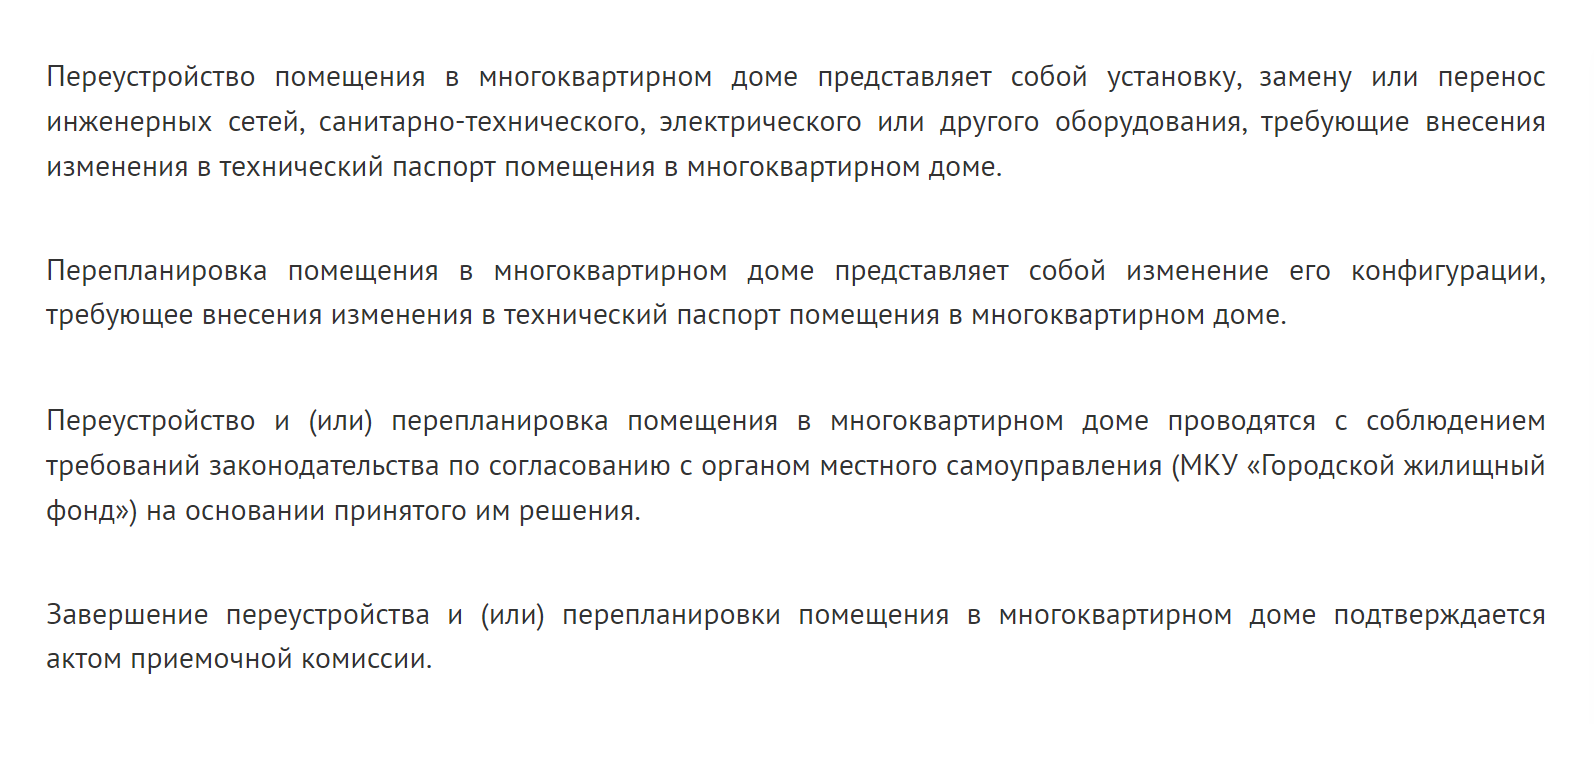 В Белгороде есть только постановление, посвященное порядку согласования. Никаких дополнительных ограничений для перепланировки нет